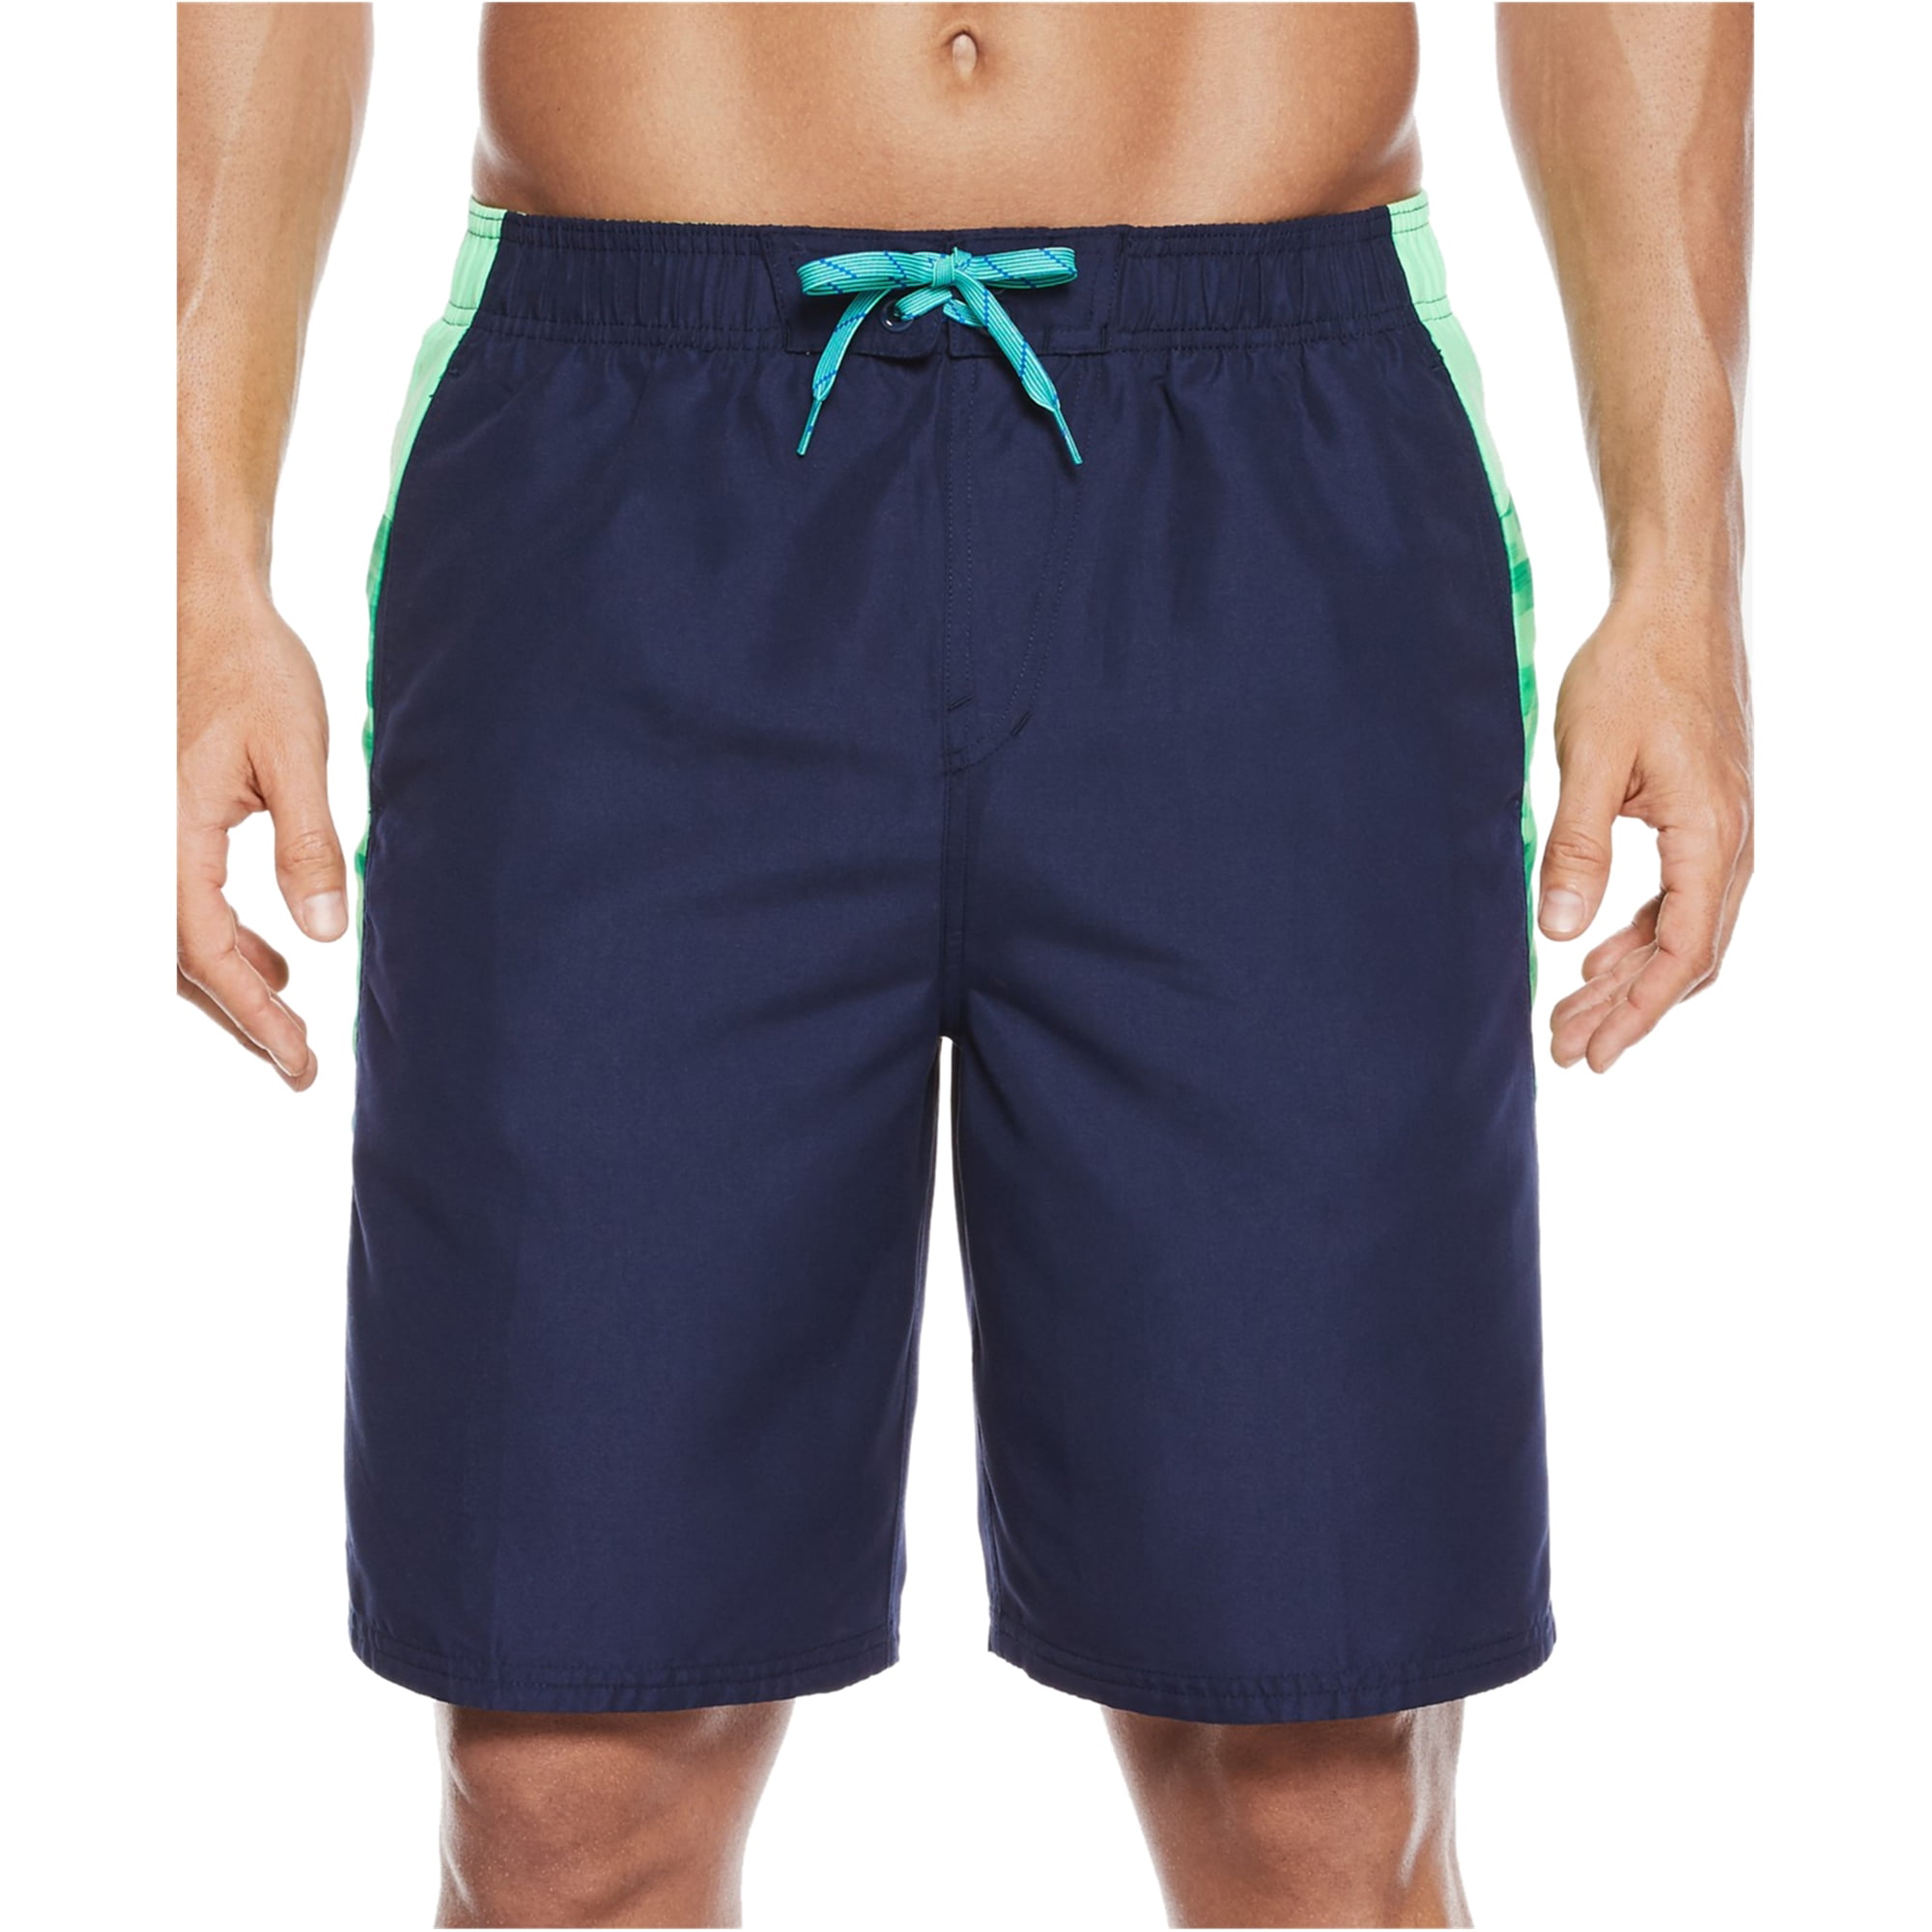 nike men's flux splice volley shorts - Walmart.com - Walmart.com